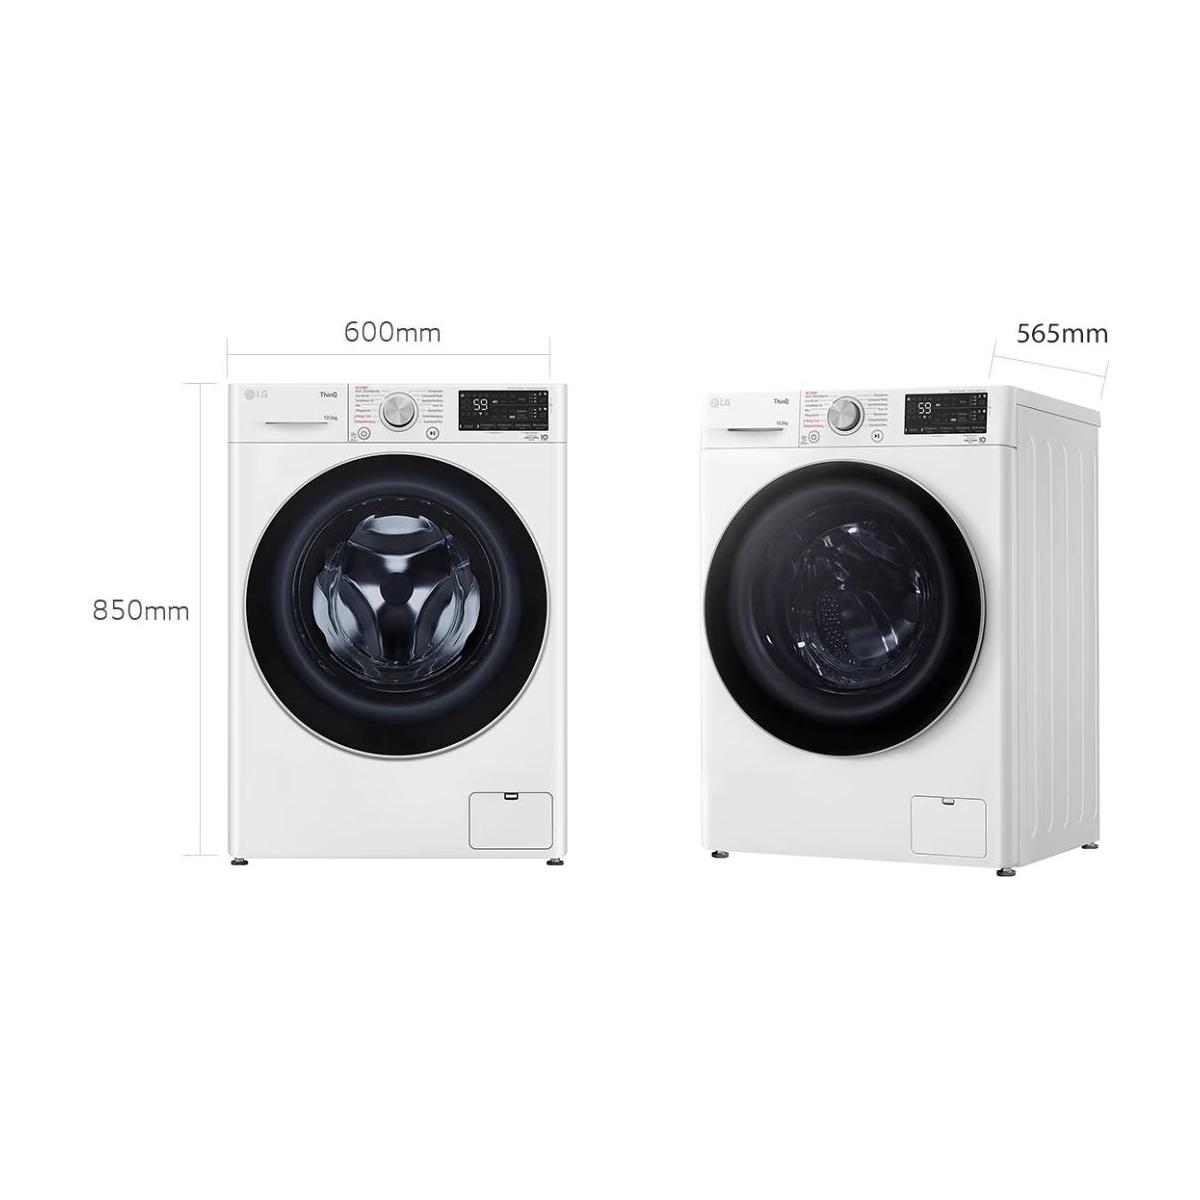 LG F4WV75X1 10,5kg Frontlader Waschmaschine, 60 cm breit, Aqua Lock,  Mengenautomatik, Kindersicherung, Autodosierung, weiß Elektroshop Wagner